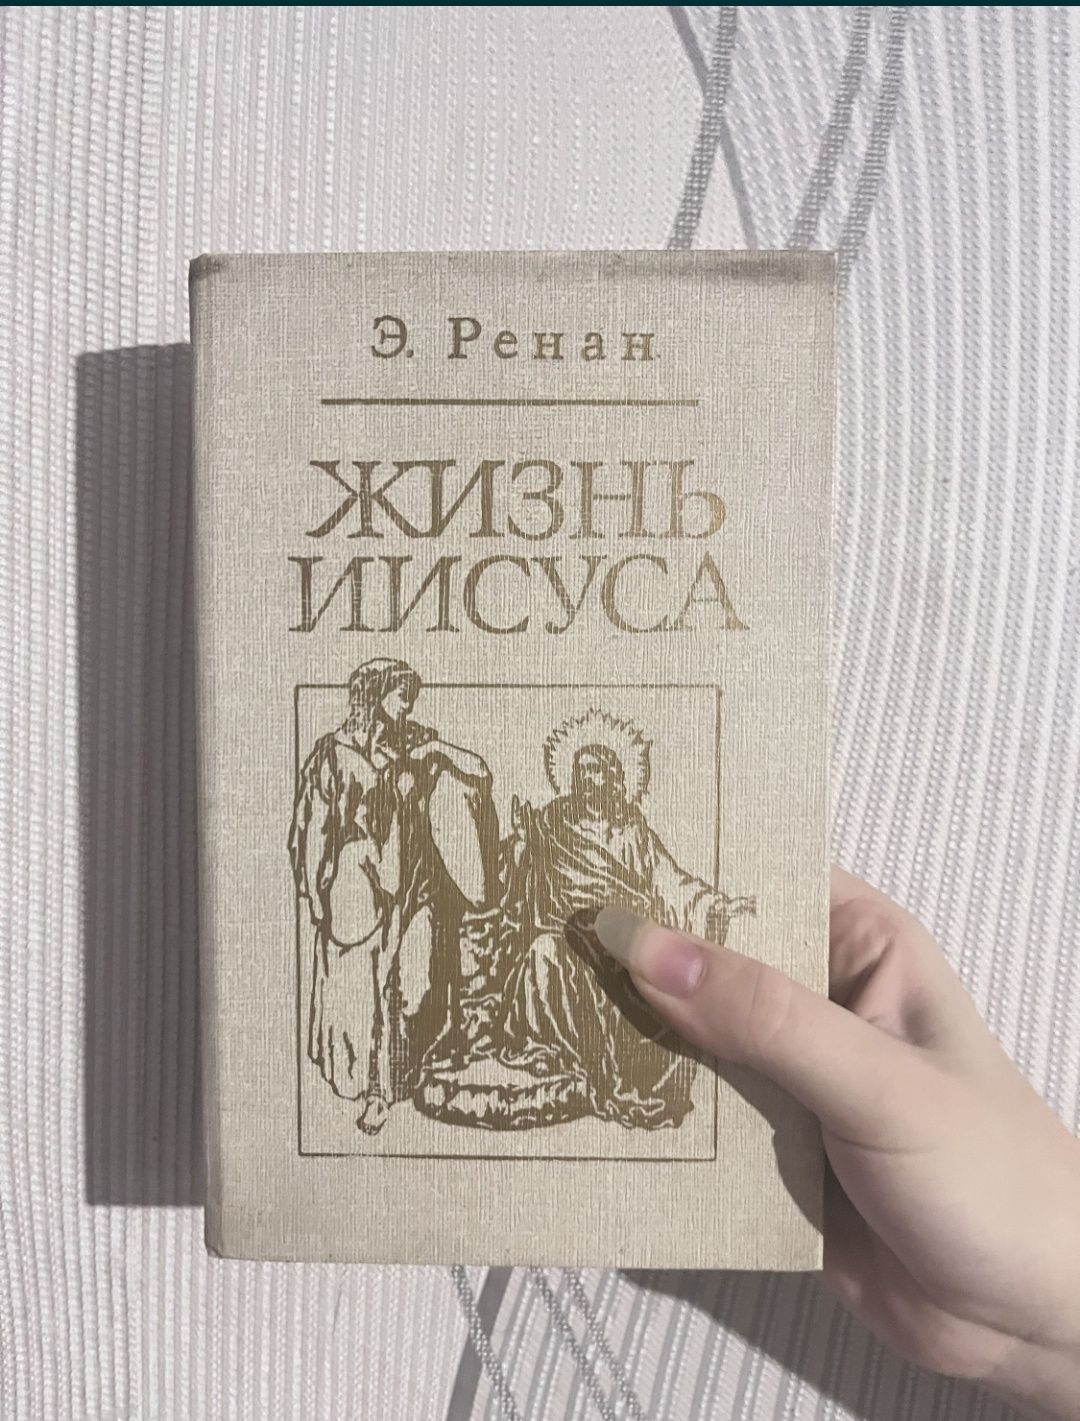 Книги старі :  Невенская губерния, Жизнь Иисуса , На західному фронті